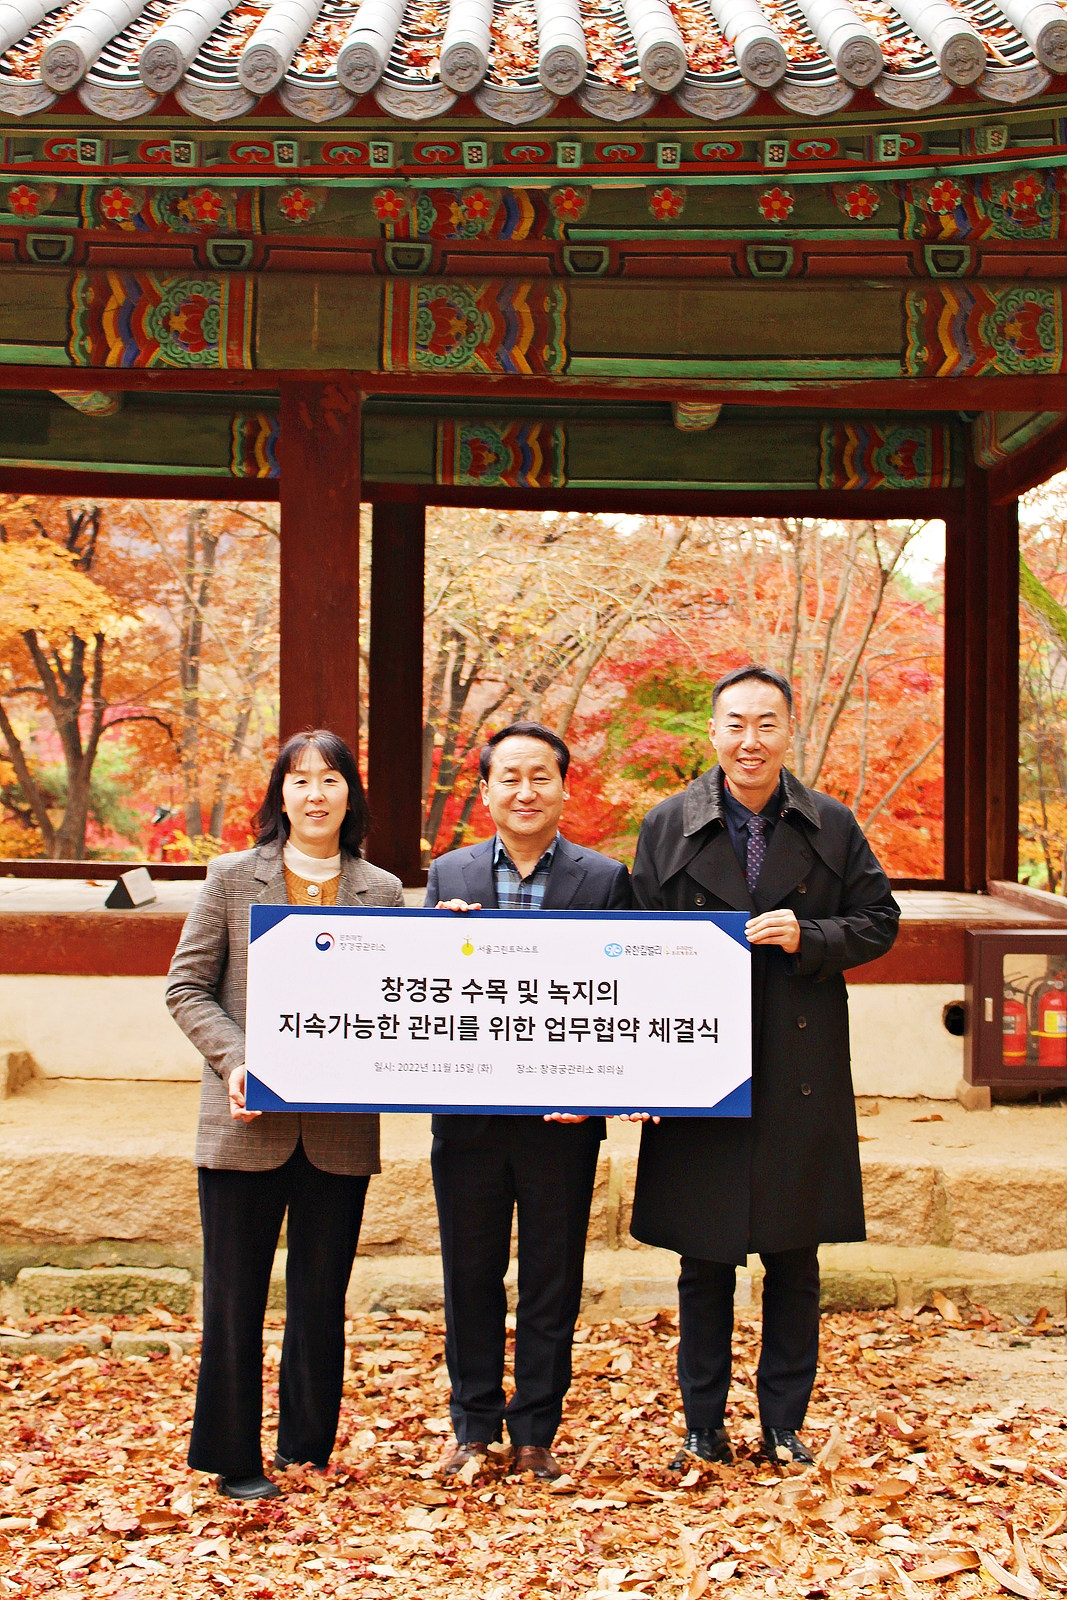 [생활경제 이슈] 유한킴벌리, 600년 역사 간직한 창경궁 궁궐숲 복원 앞장 外